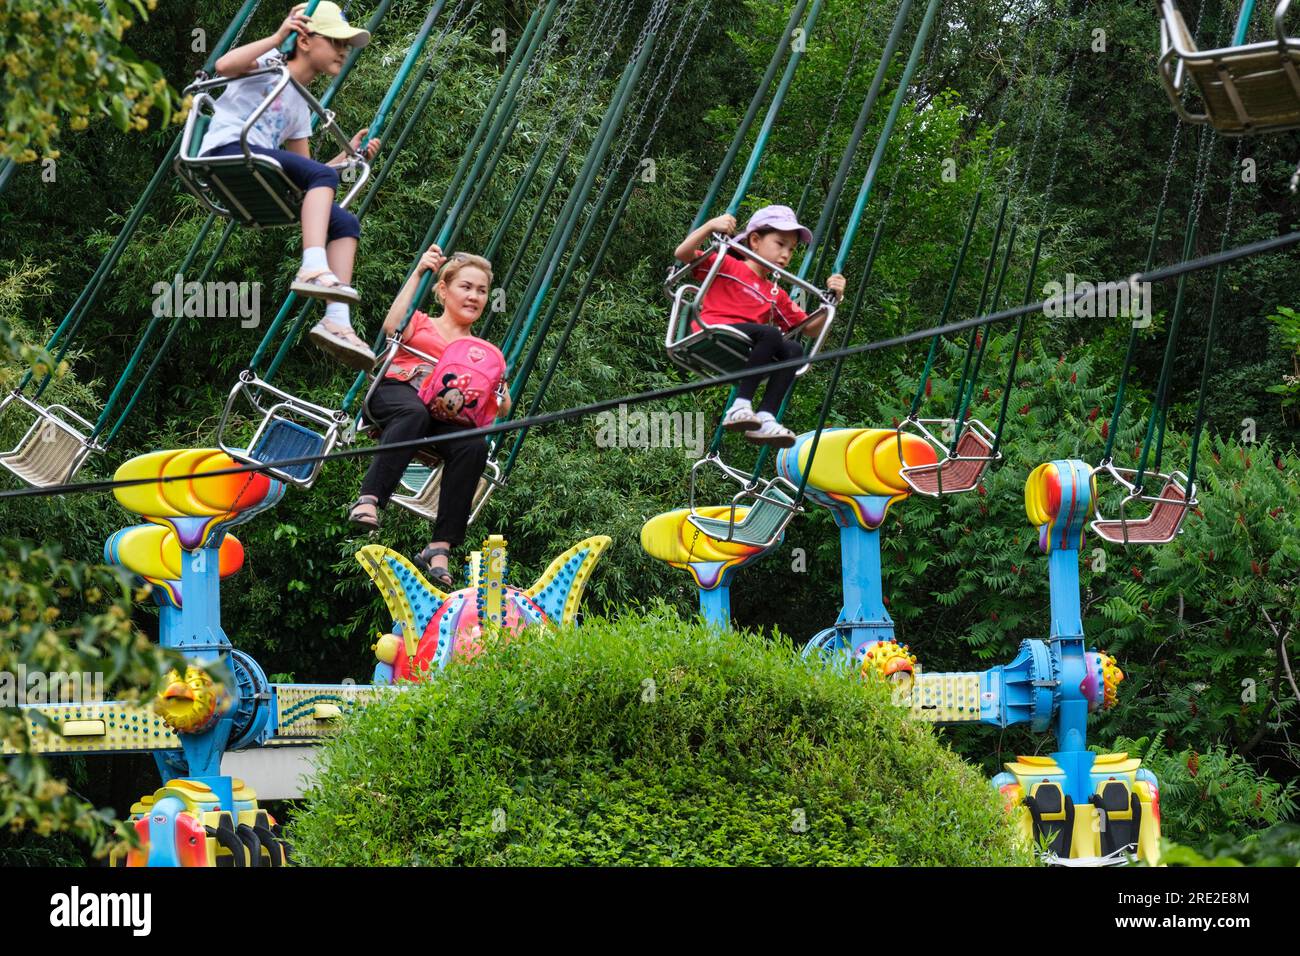 Kazakhstan, Almaty. People on Amusement Park Ride, Central Park pour la culture et les loisirs. Banque D'Images